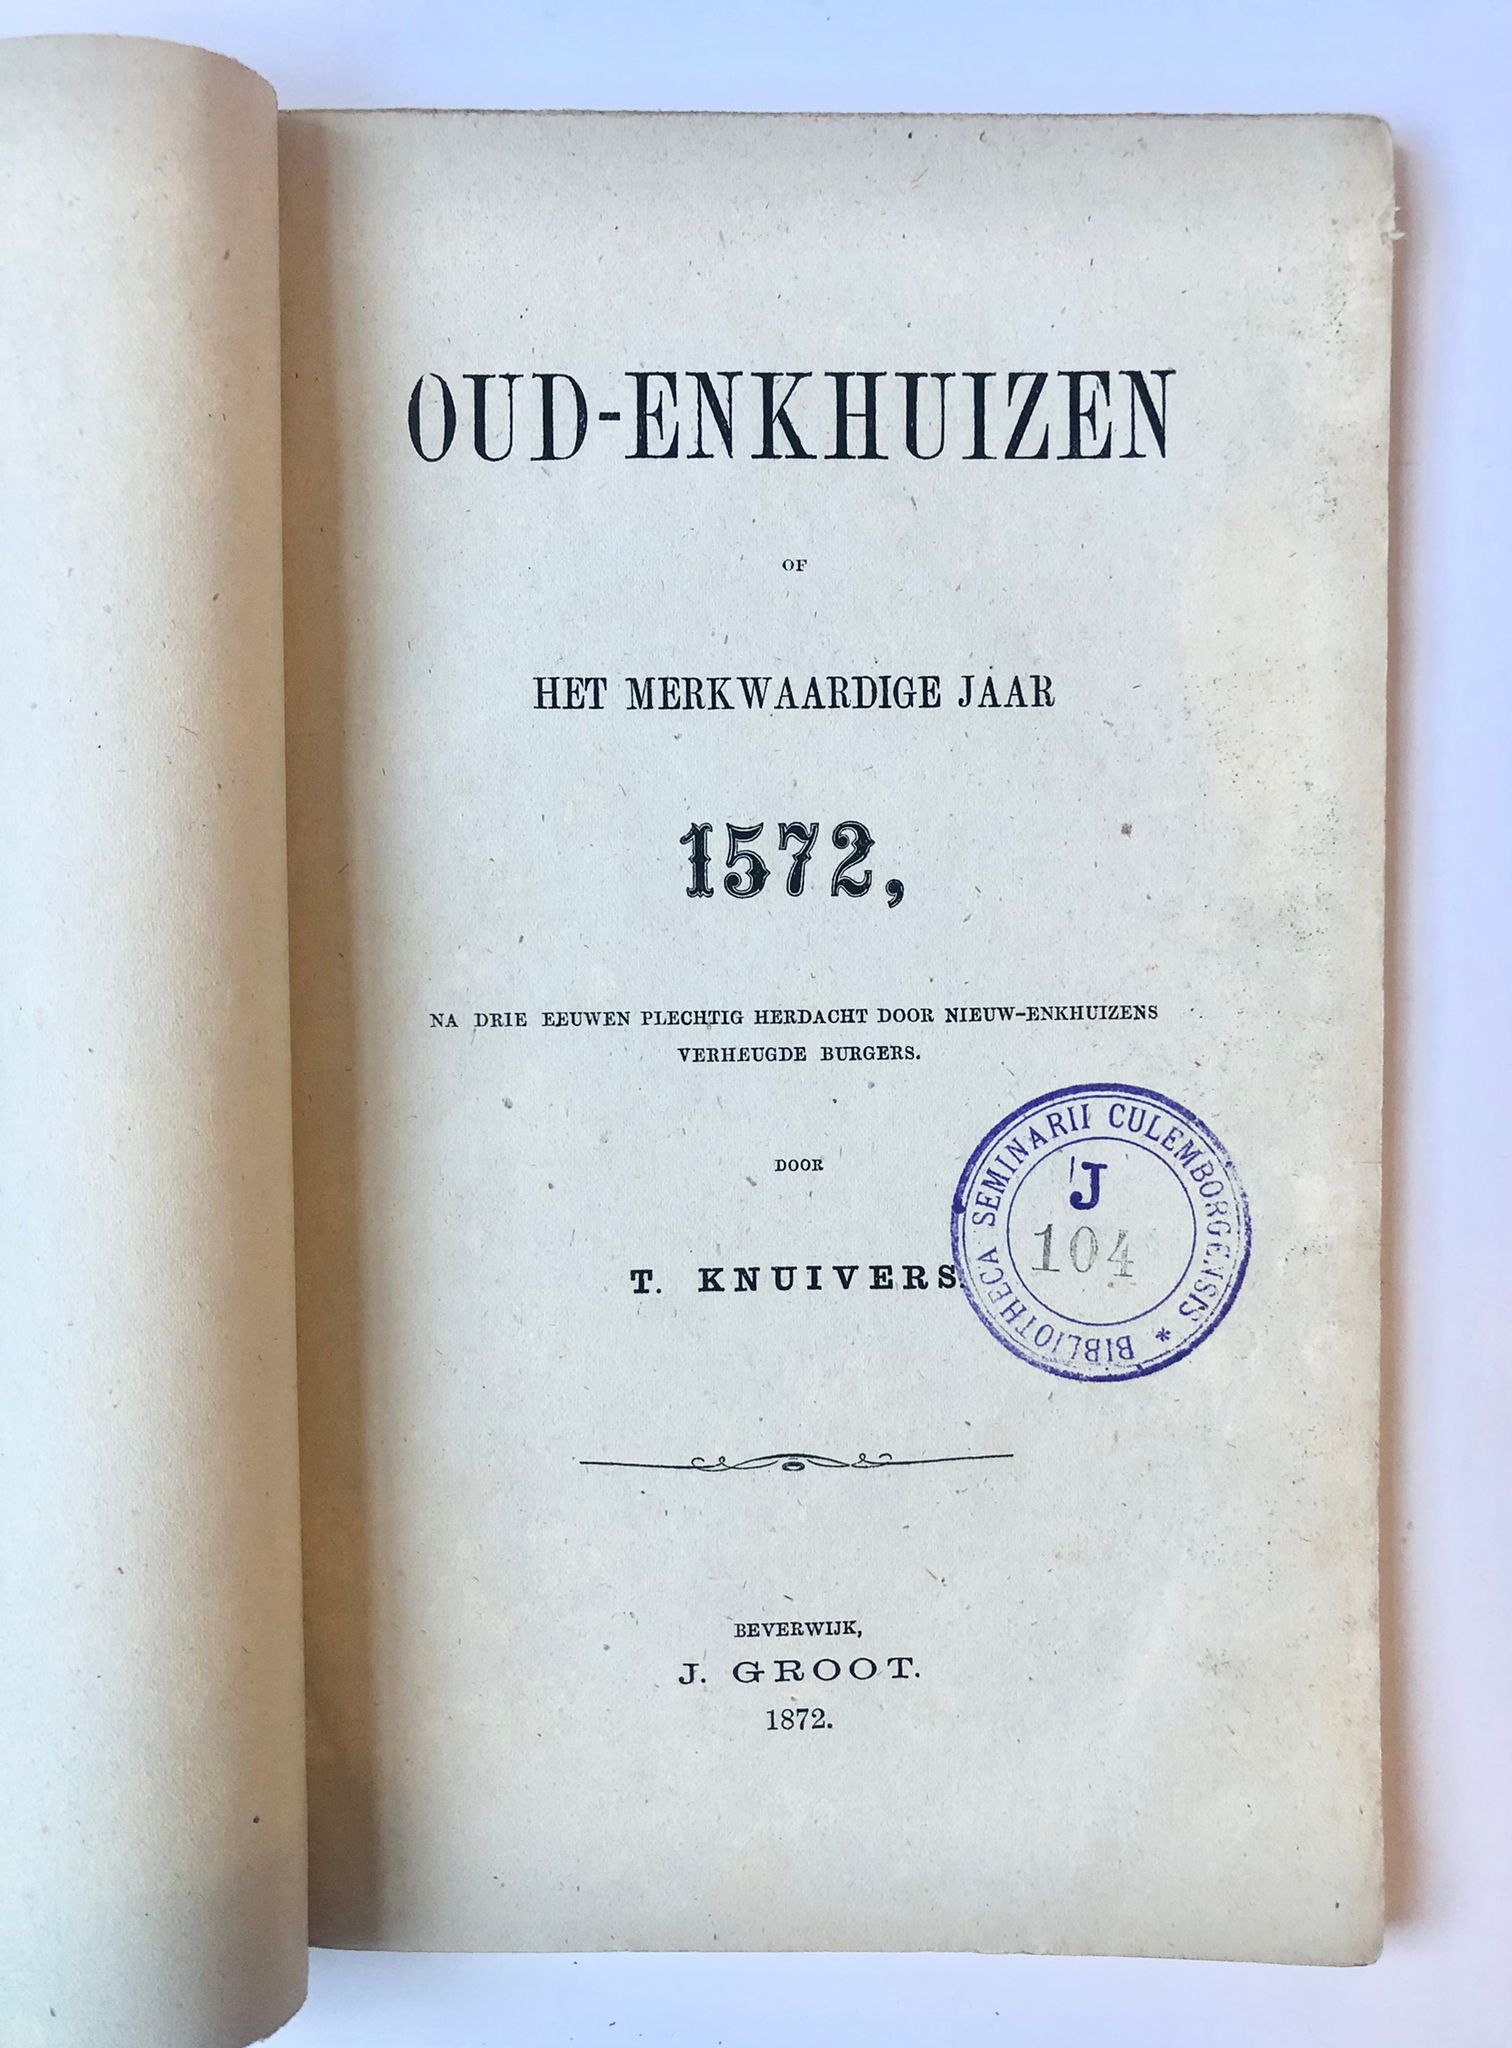 [Enkhuizen, Noord-Holland] Oud-Enkhuizen of het merkwaardige jaar 1572, Na drie eeuwen plechtig herdacht door Nieuw-Enkhuizens verheugde burgers, door T. Knuivers, J. Groot, Beverwijk, 1872, 71 pp.